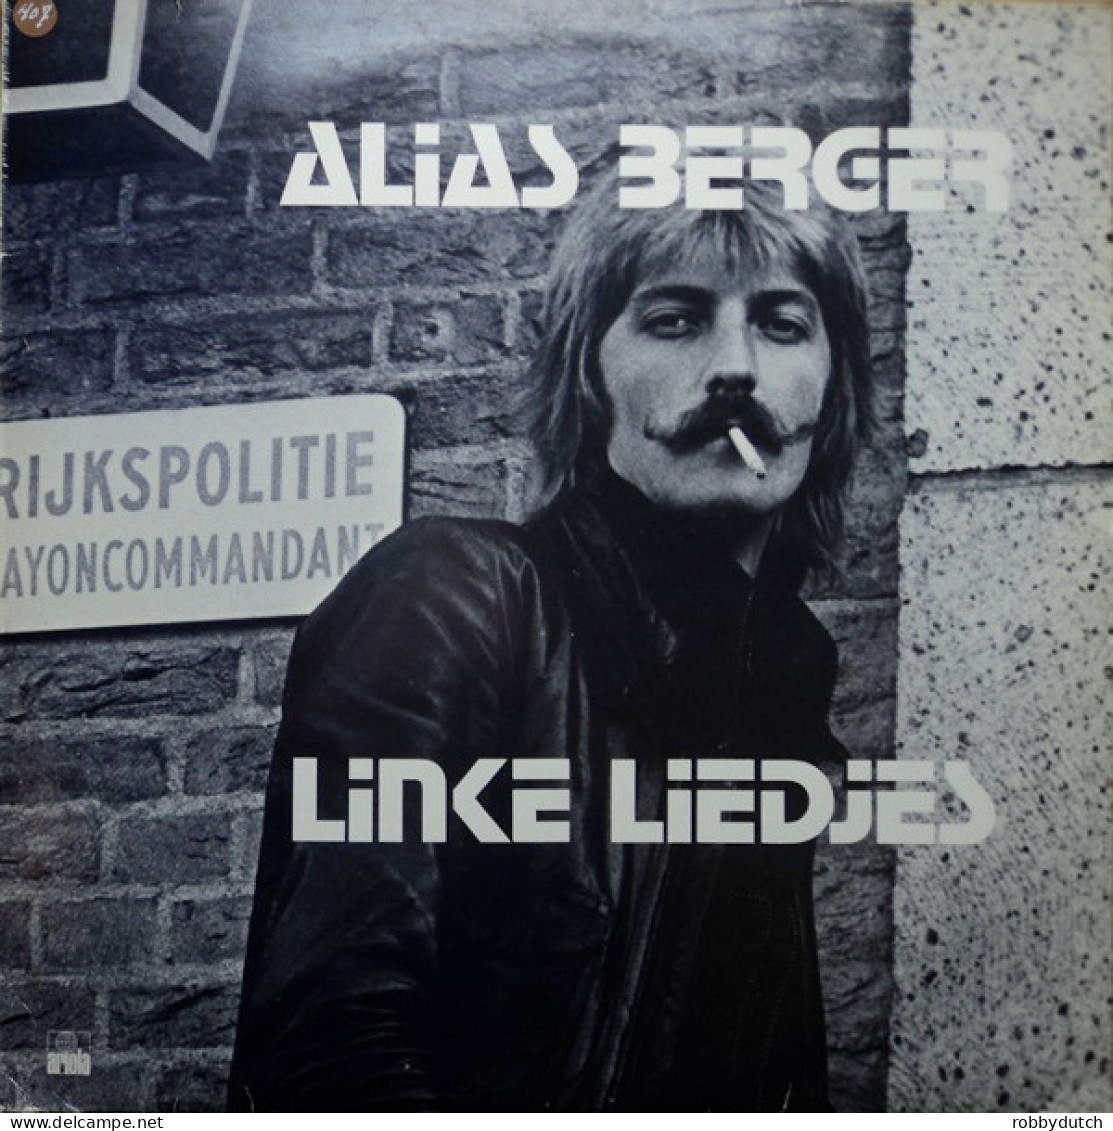 * LP *  ALIAS BERGER - LINKE LIEDJES (Holland 1975 EX) - Sonstige - Niederländische Musik